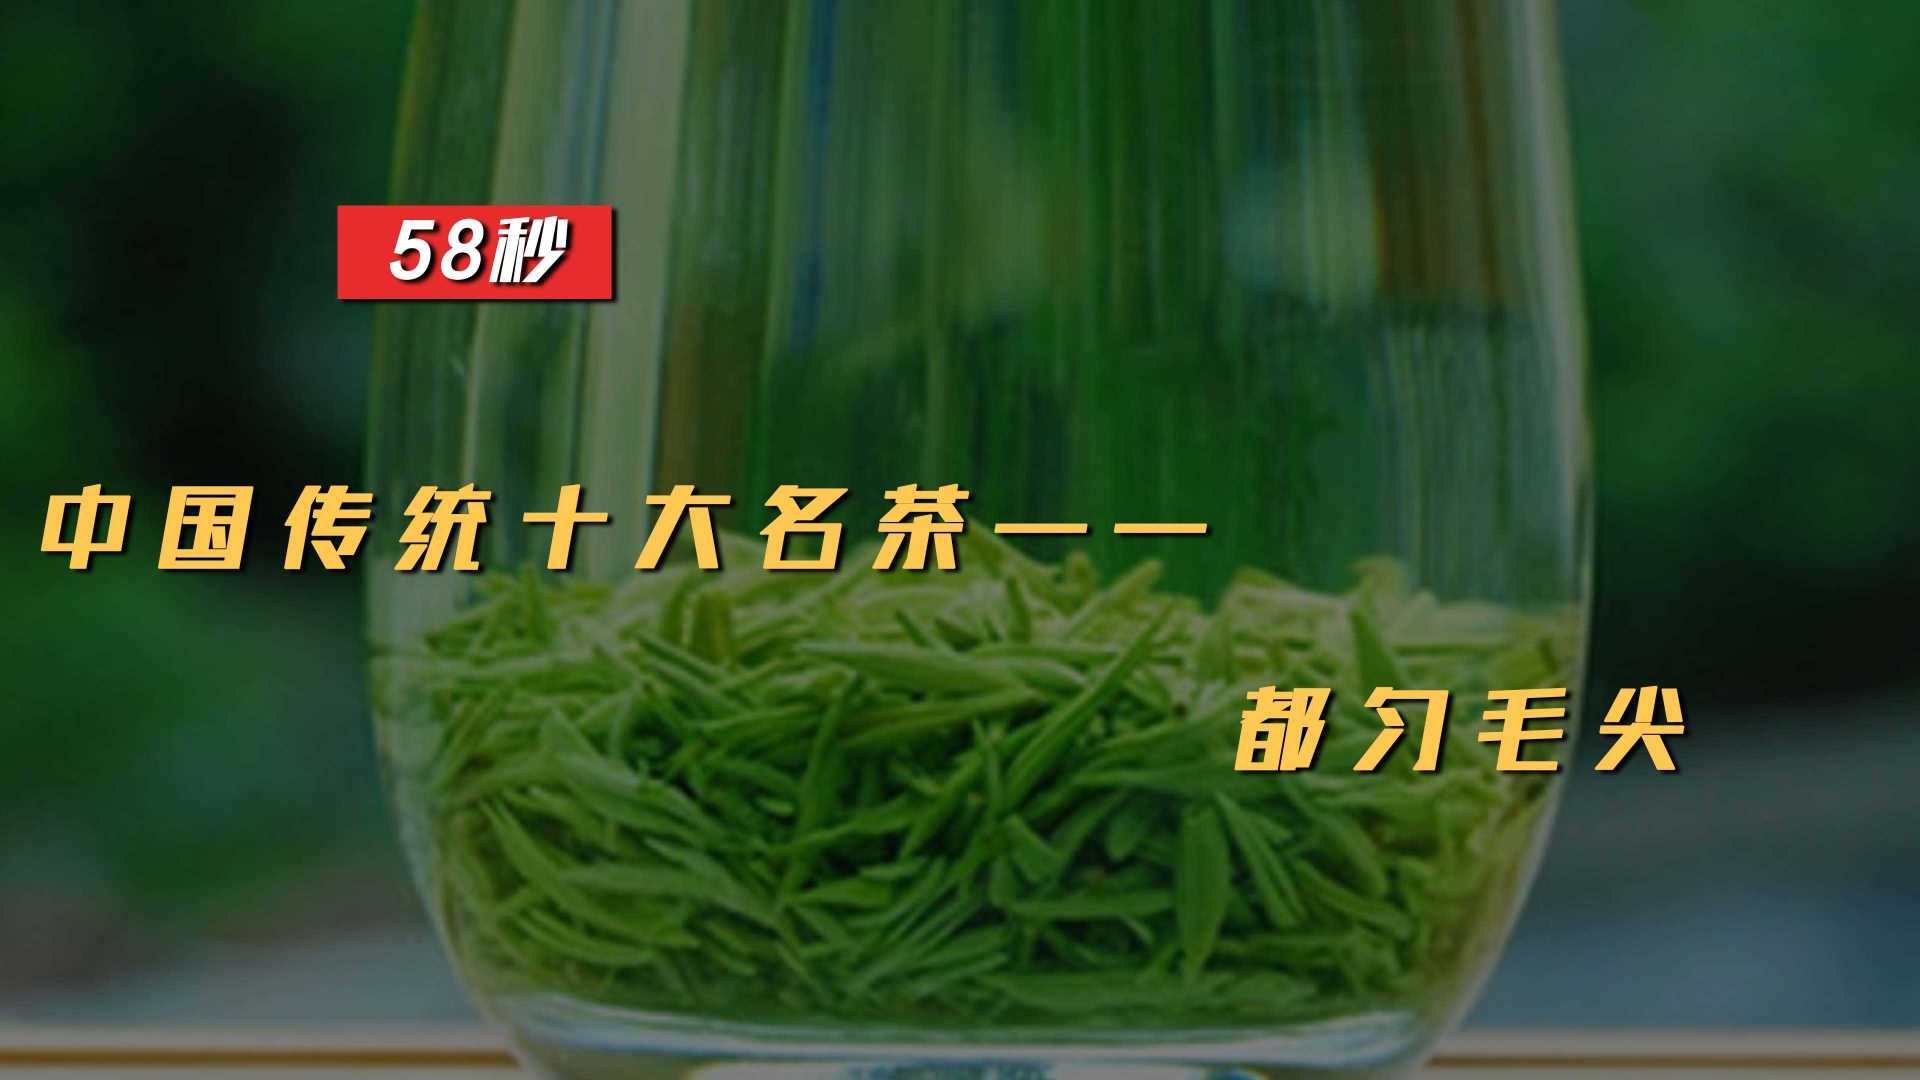 中国传统十大名茶之都匀毛尖